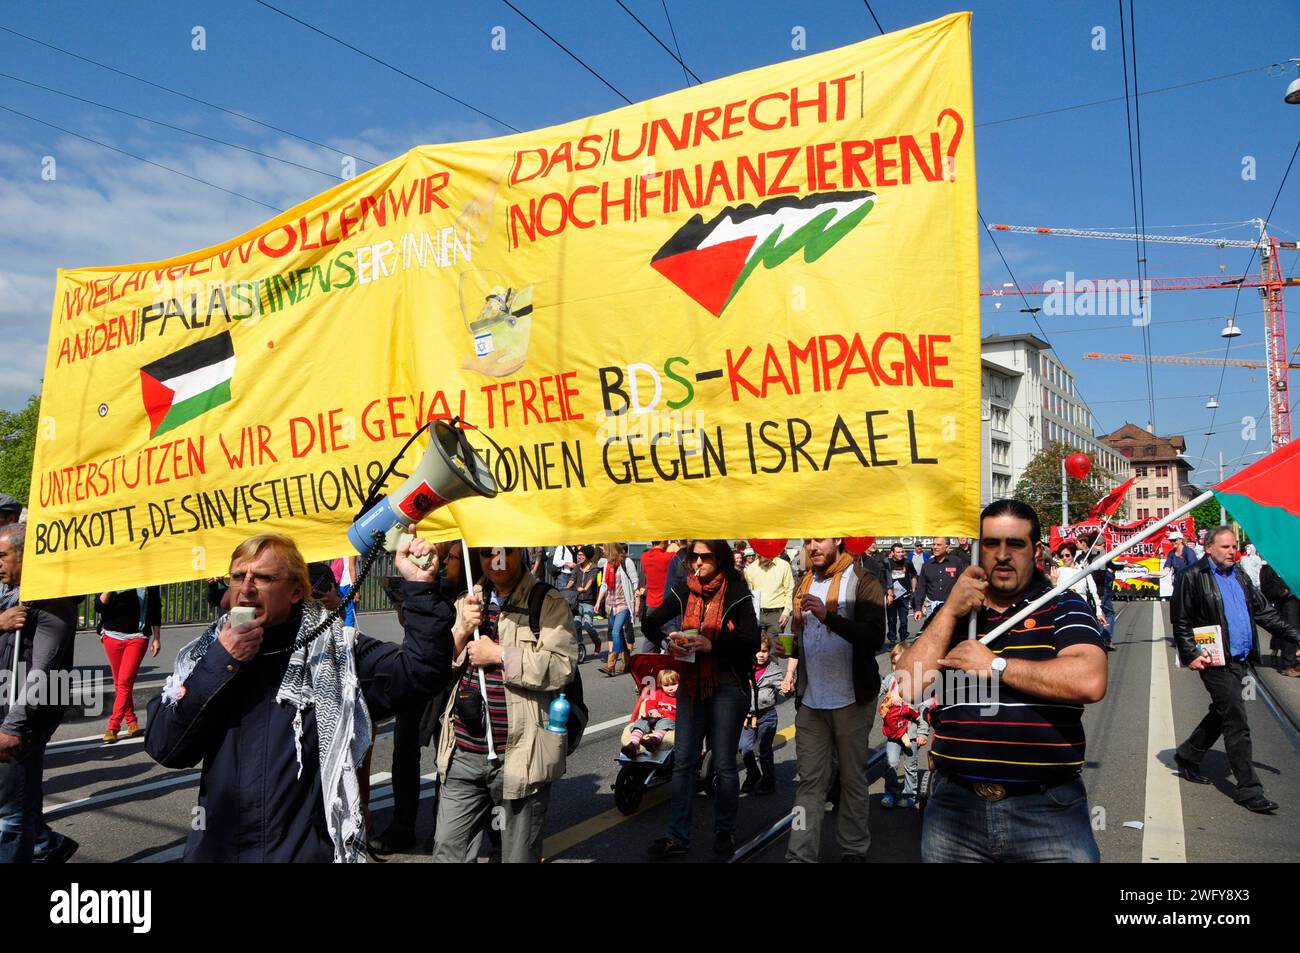 Palestina-Protest in Zürich: People demanding sanctions against Israel, Palästinenser-Demonstration in Zürich am 1. Mai. Die Demonstranten fordern San Stock Photo